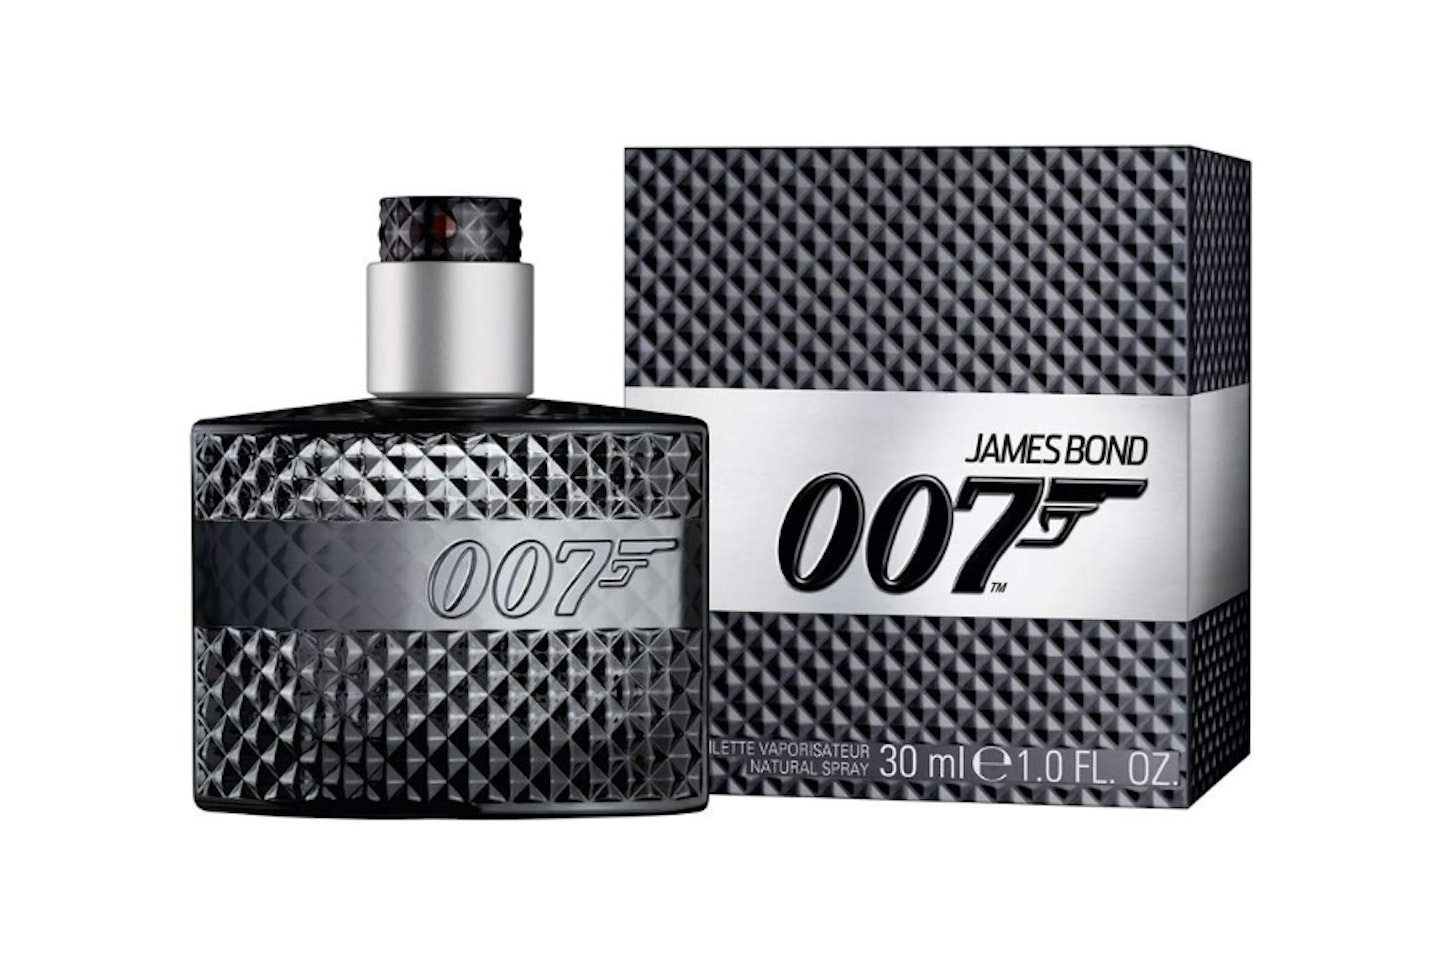 James Bond 007 Eau de Toilette - 30 ml, £12.82